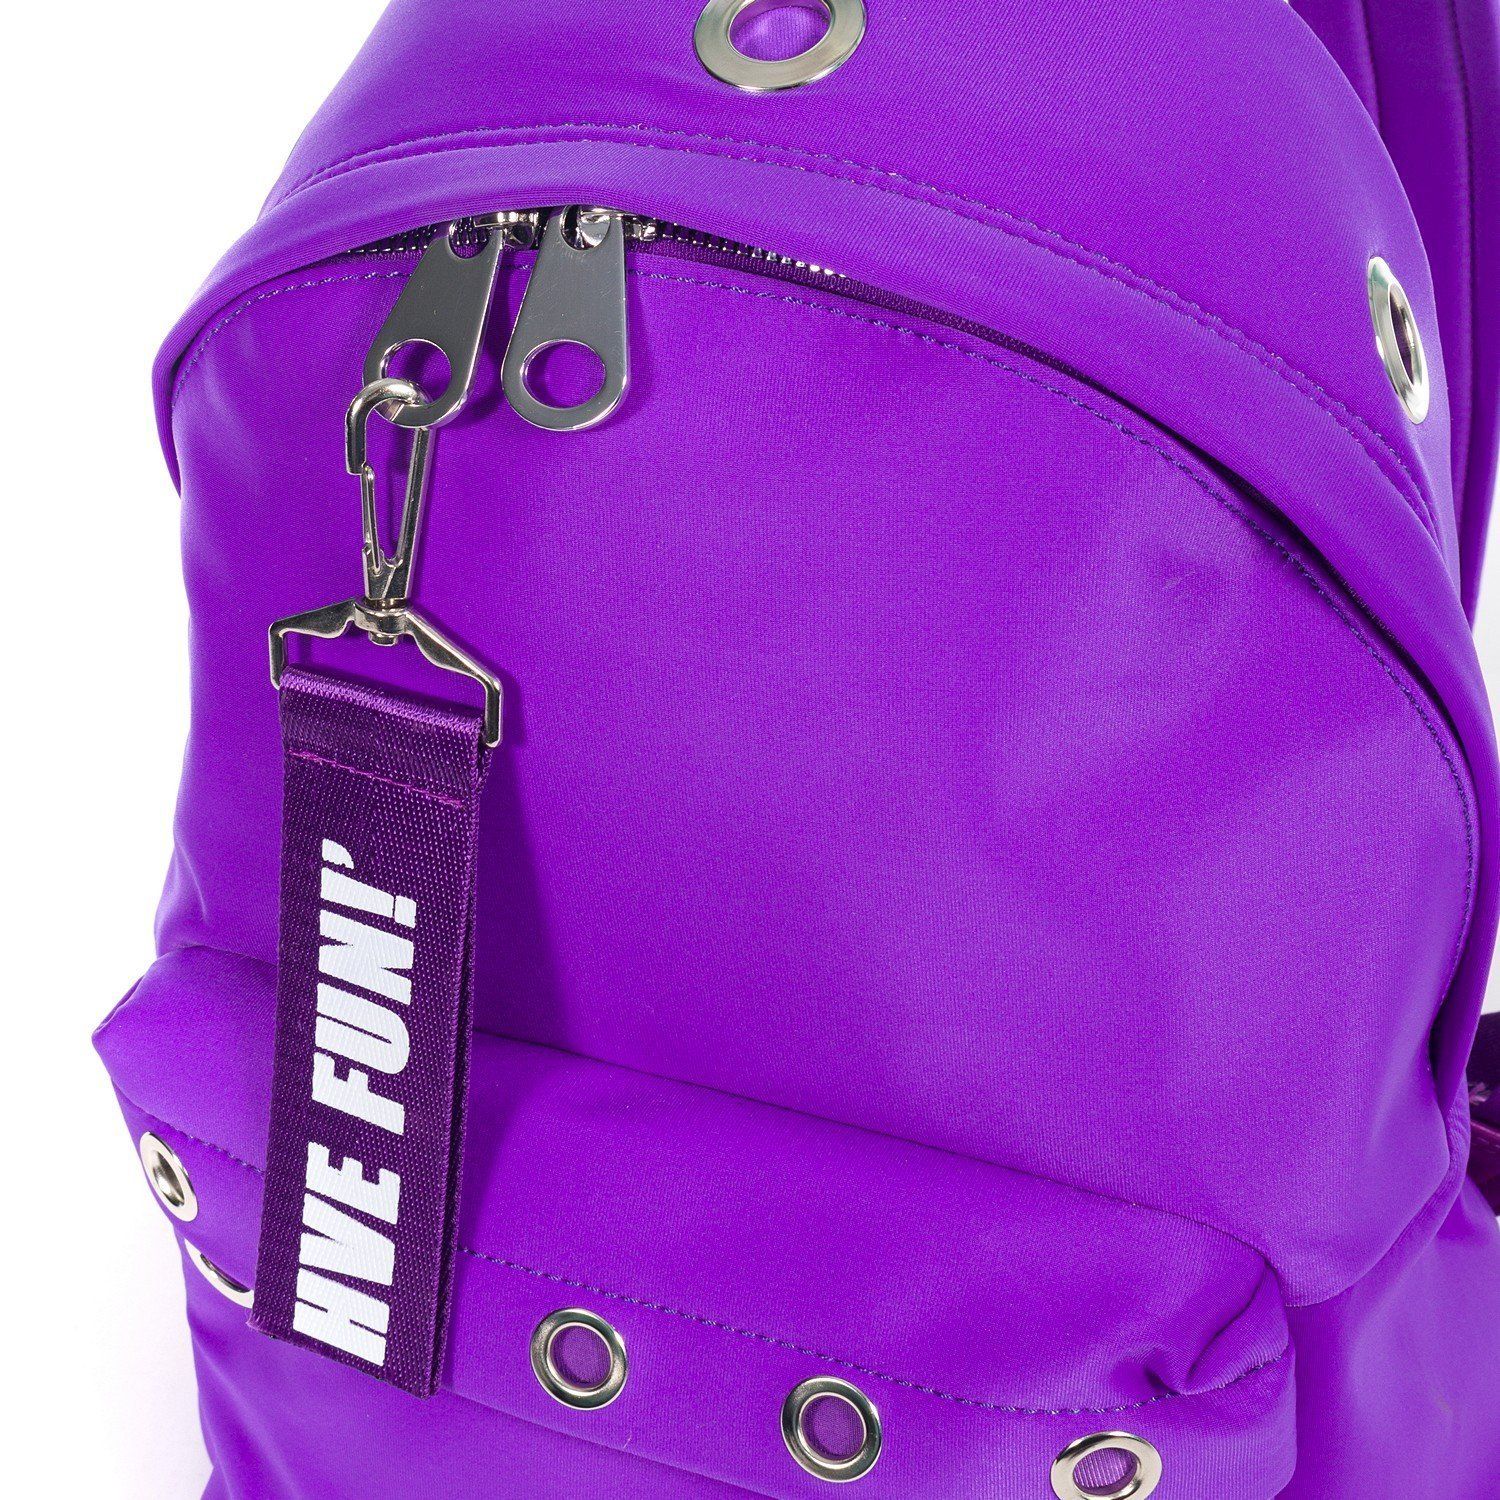 Рюкзак женский городской, фиолетовый, с широкими лямками, объем 19 л